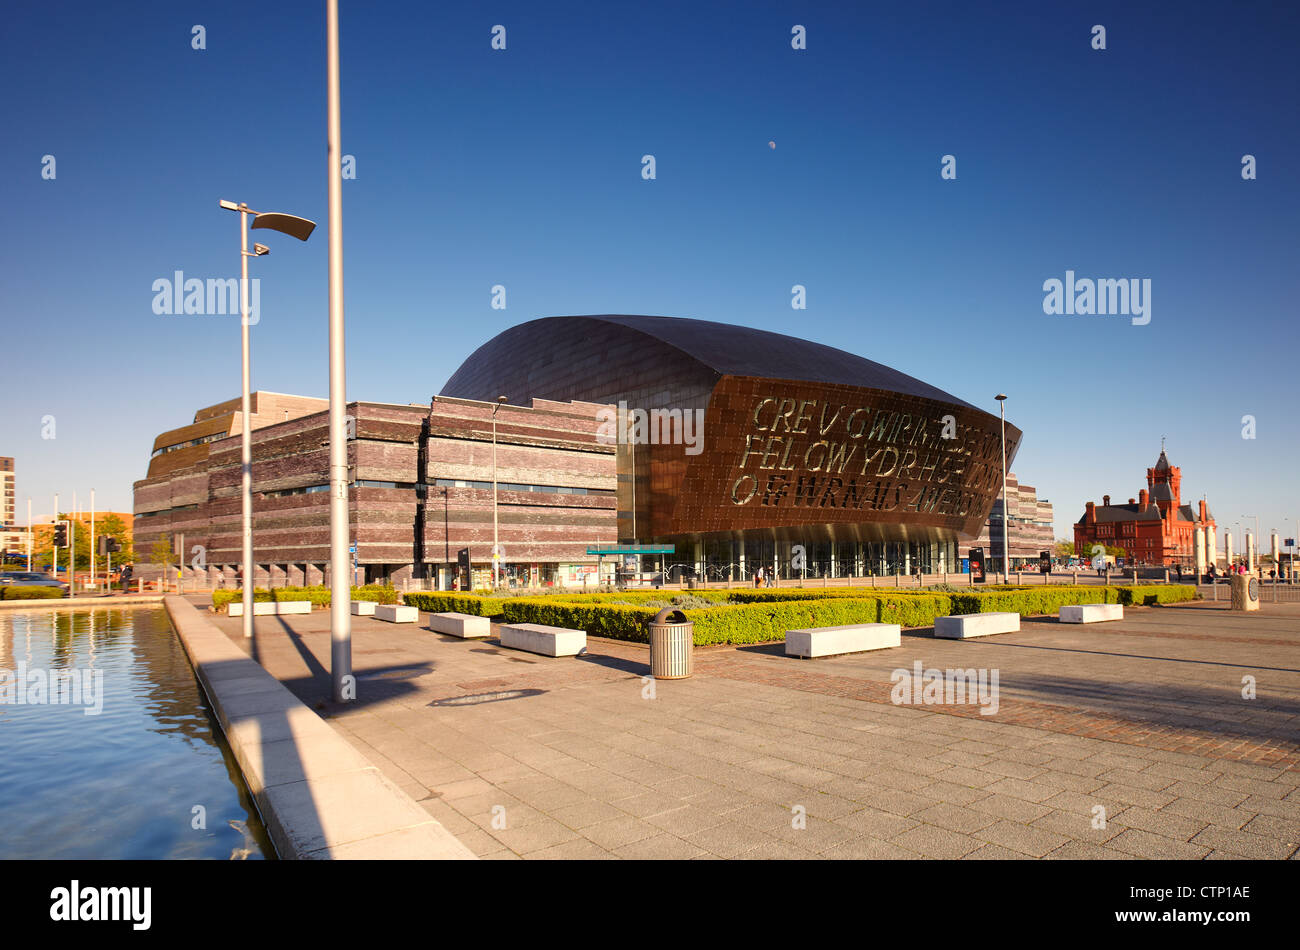 Wales Millennium Centre, Bucht von Cardiff, Cardiff, Wales, UK Stockfoto